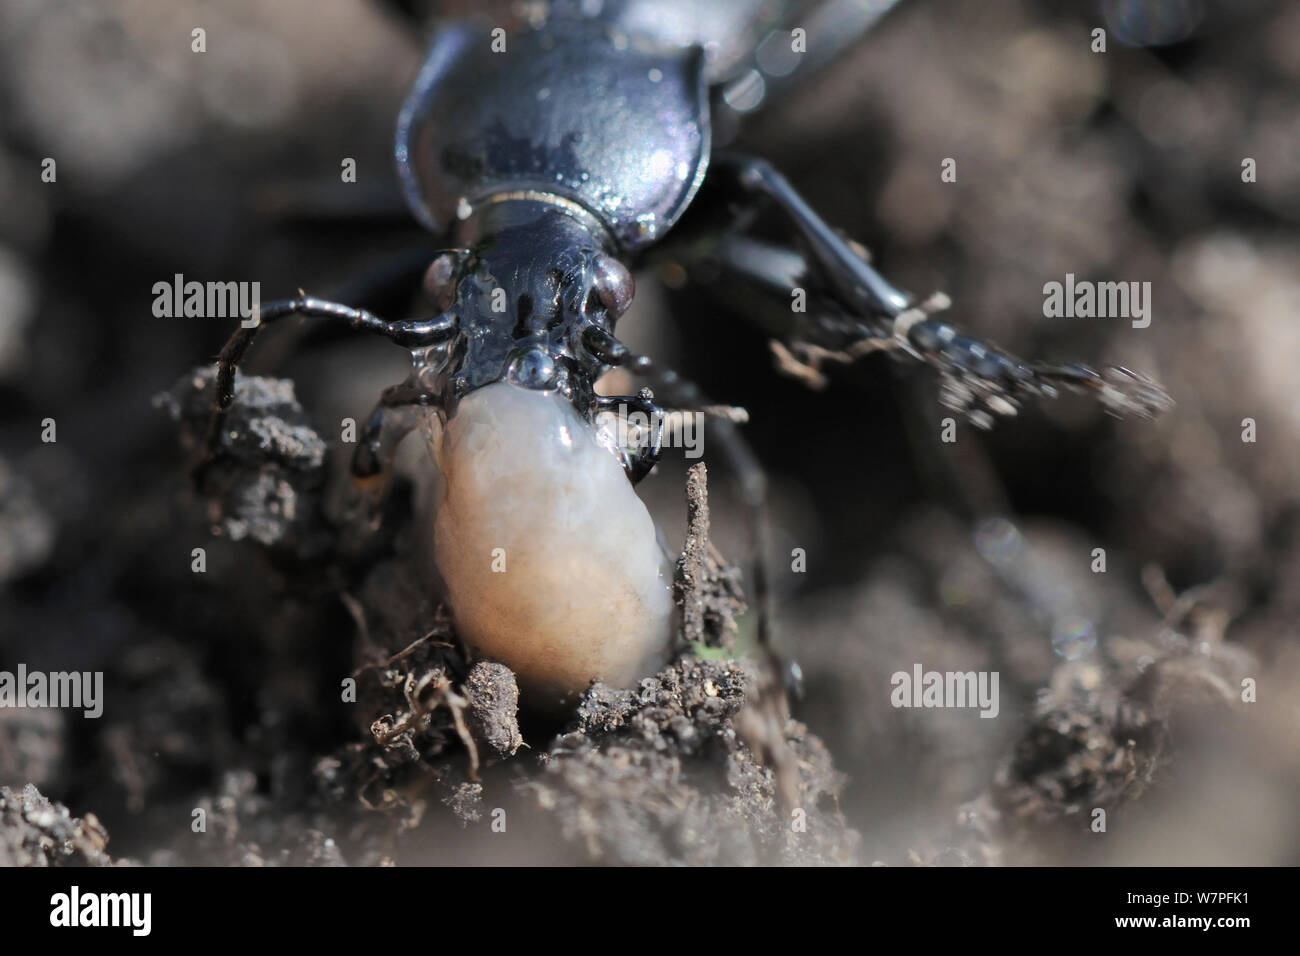 Violet ground beetle (Carabus violaceus) attacking a small Grey field slug / Netted slug (Deroceras reticulatum), Hertfordshire garden, UK, August. Stock Photo